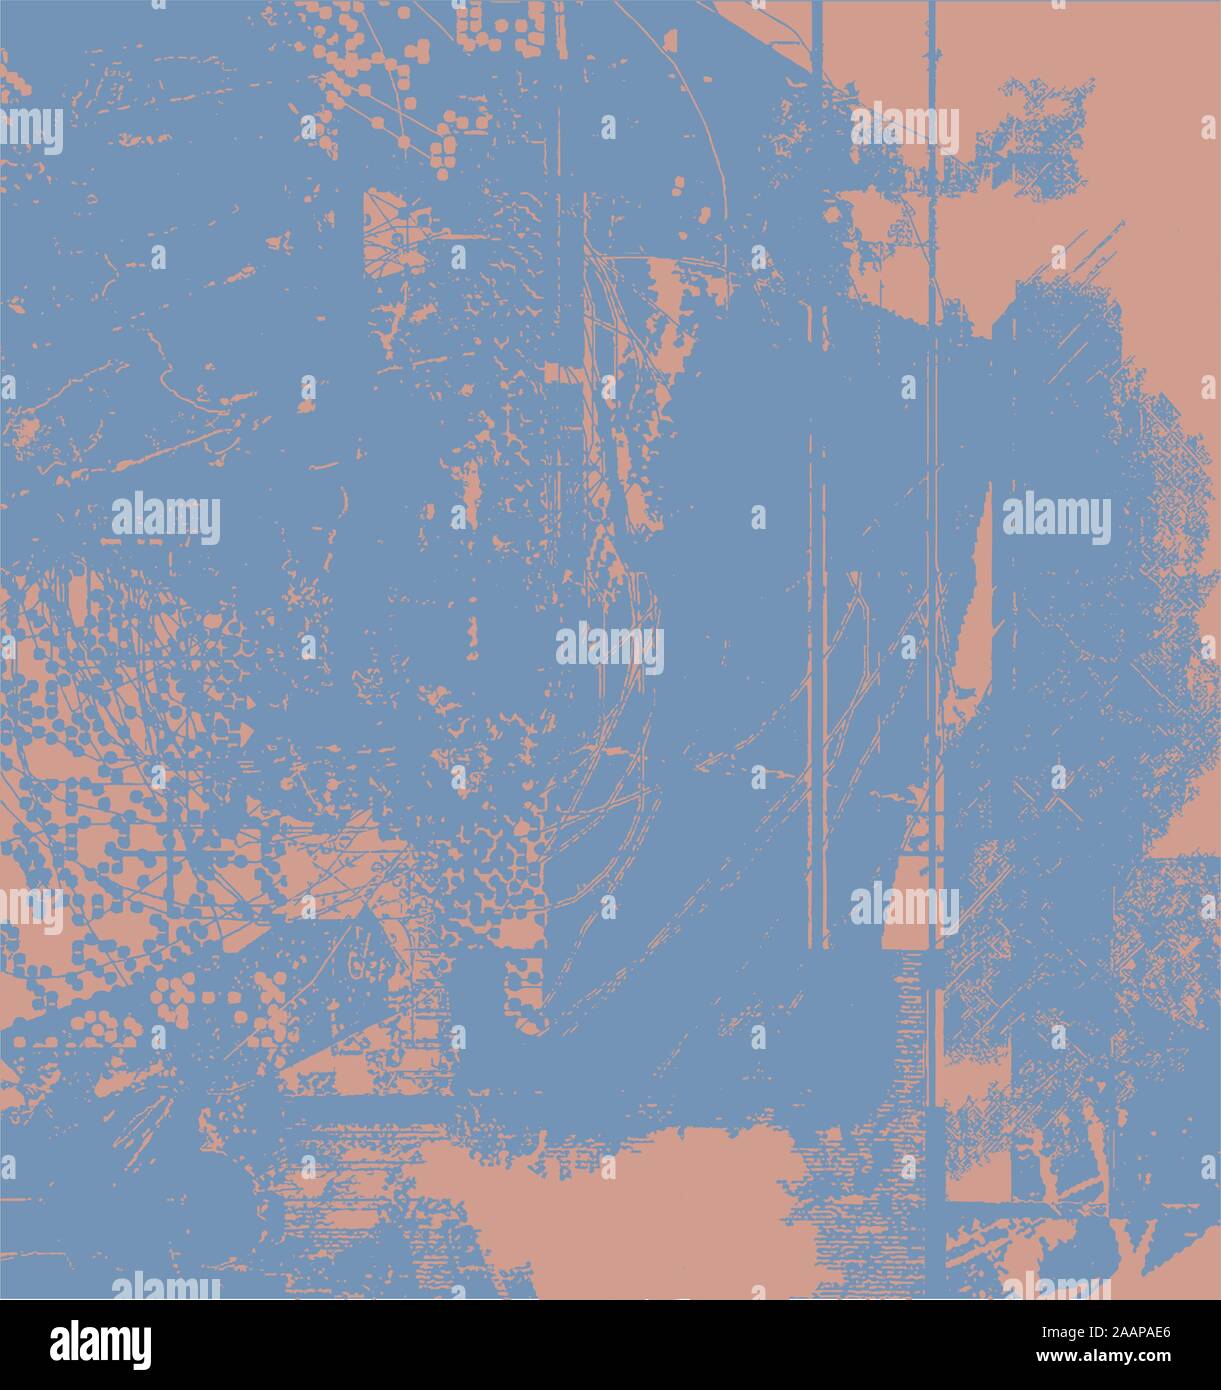 Zusammenfassung Hintergrund Grunge Effekte Papier Design - Blau und Orange Farben - Retro Stil Stock Vektor